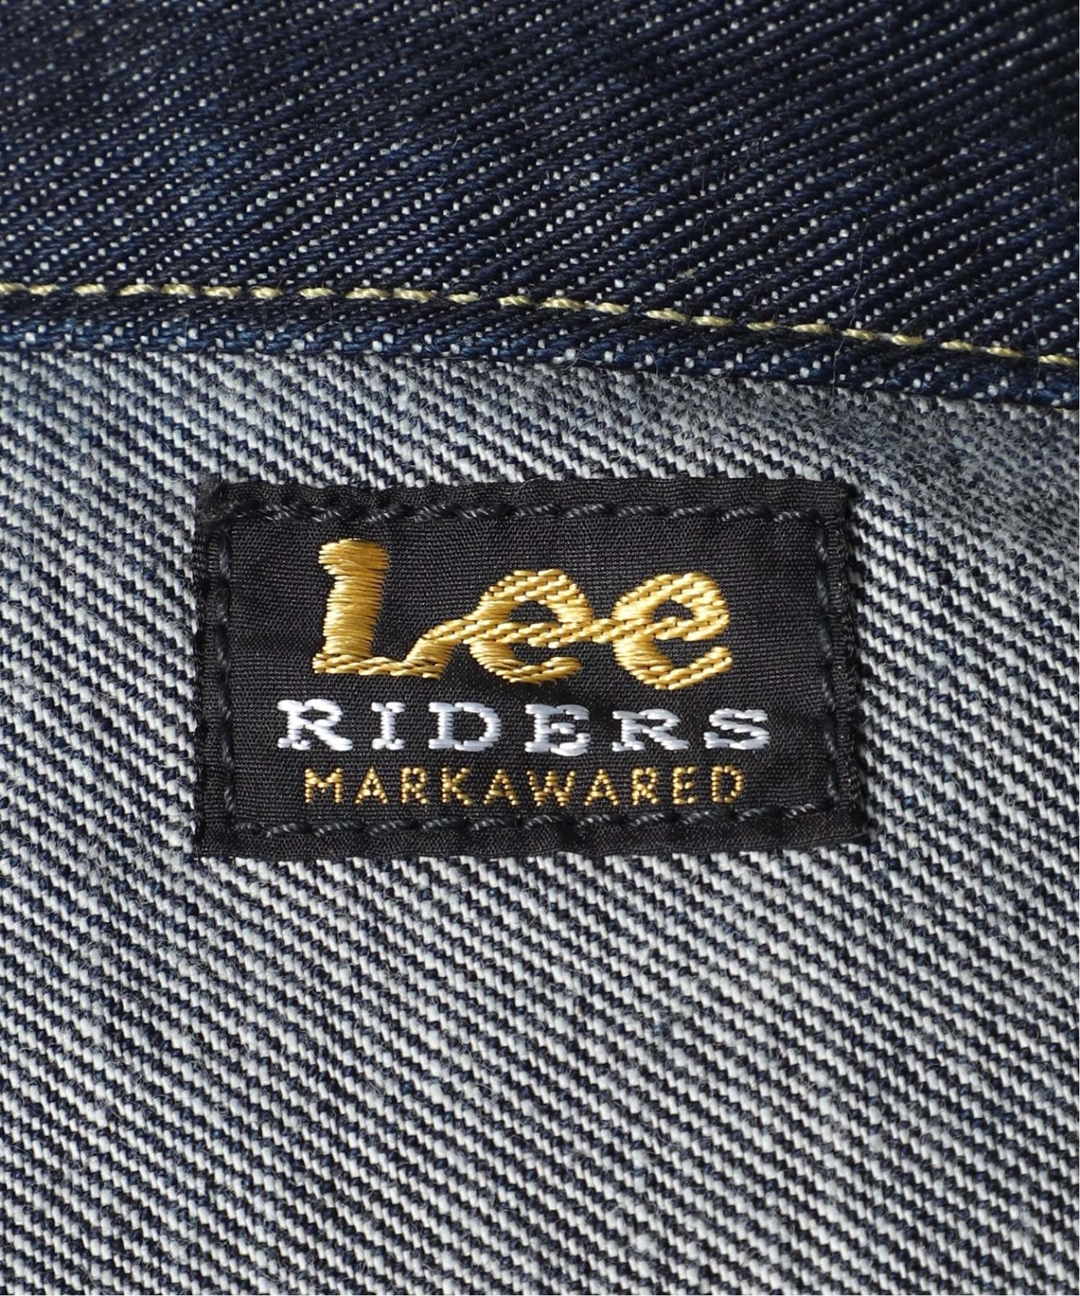 Lee × markaware for EDIFICEのスペシャルなコラボレーションの第2弾「101-J」が1/1、1/2 発売 (リー マーカウェア エディフィス)